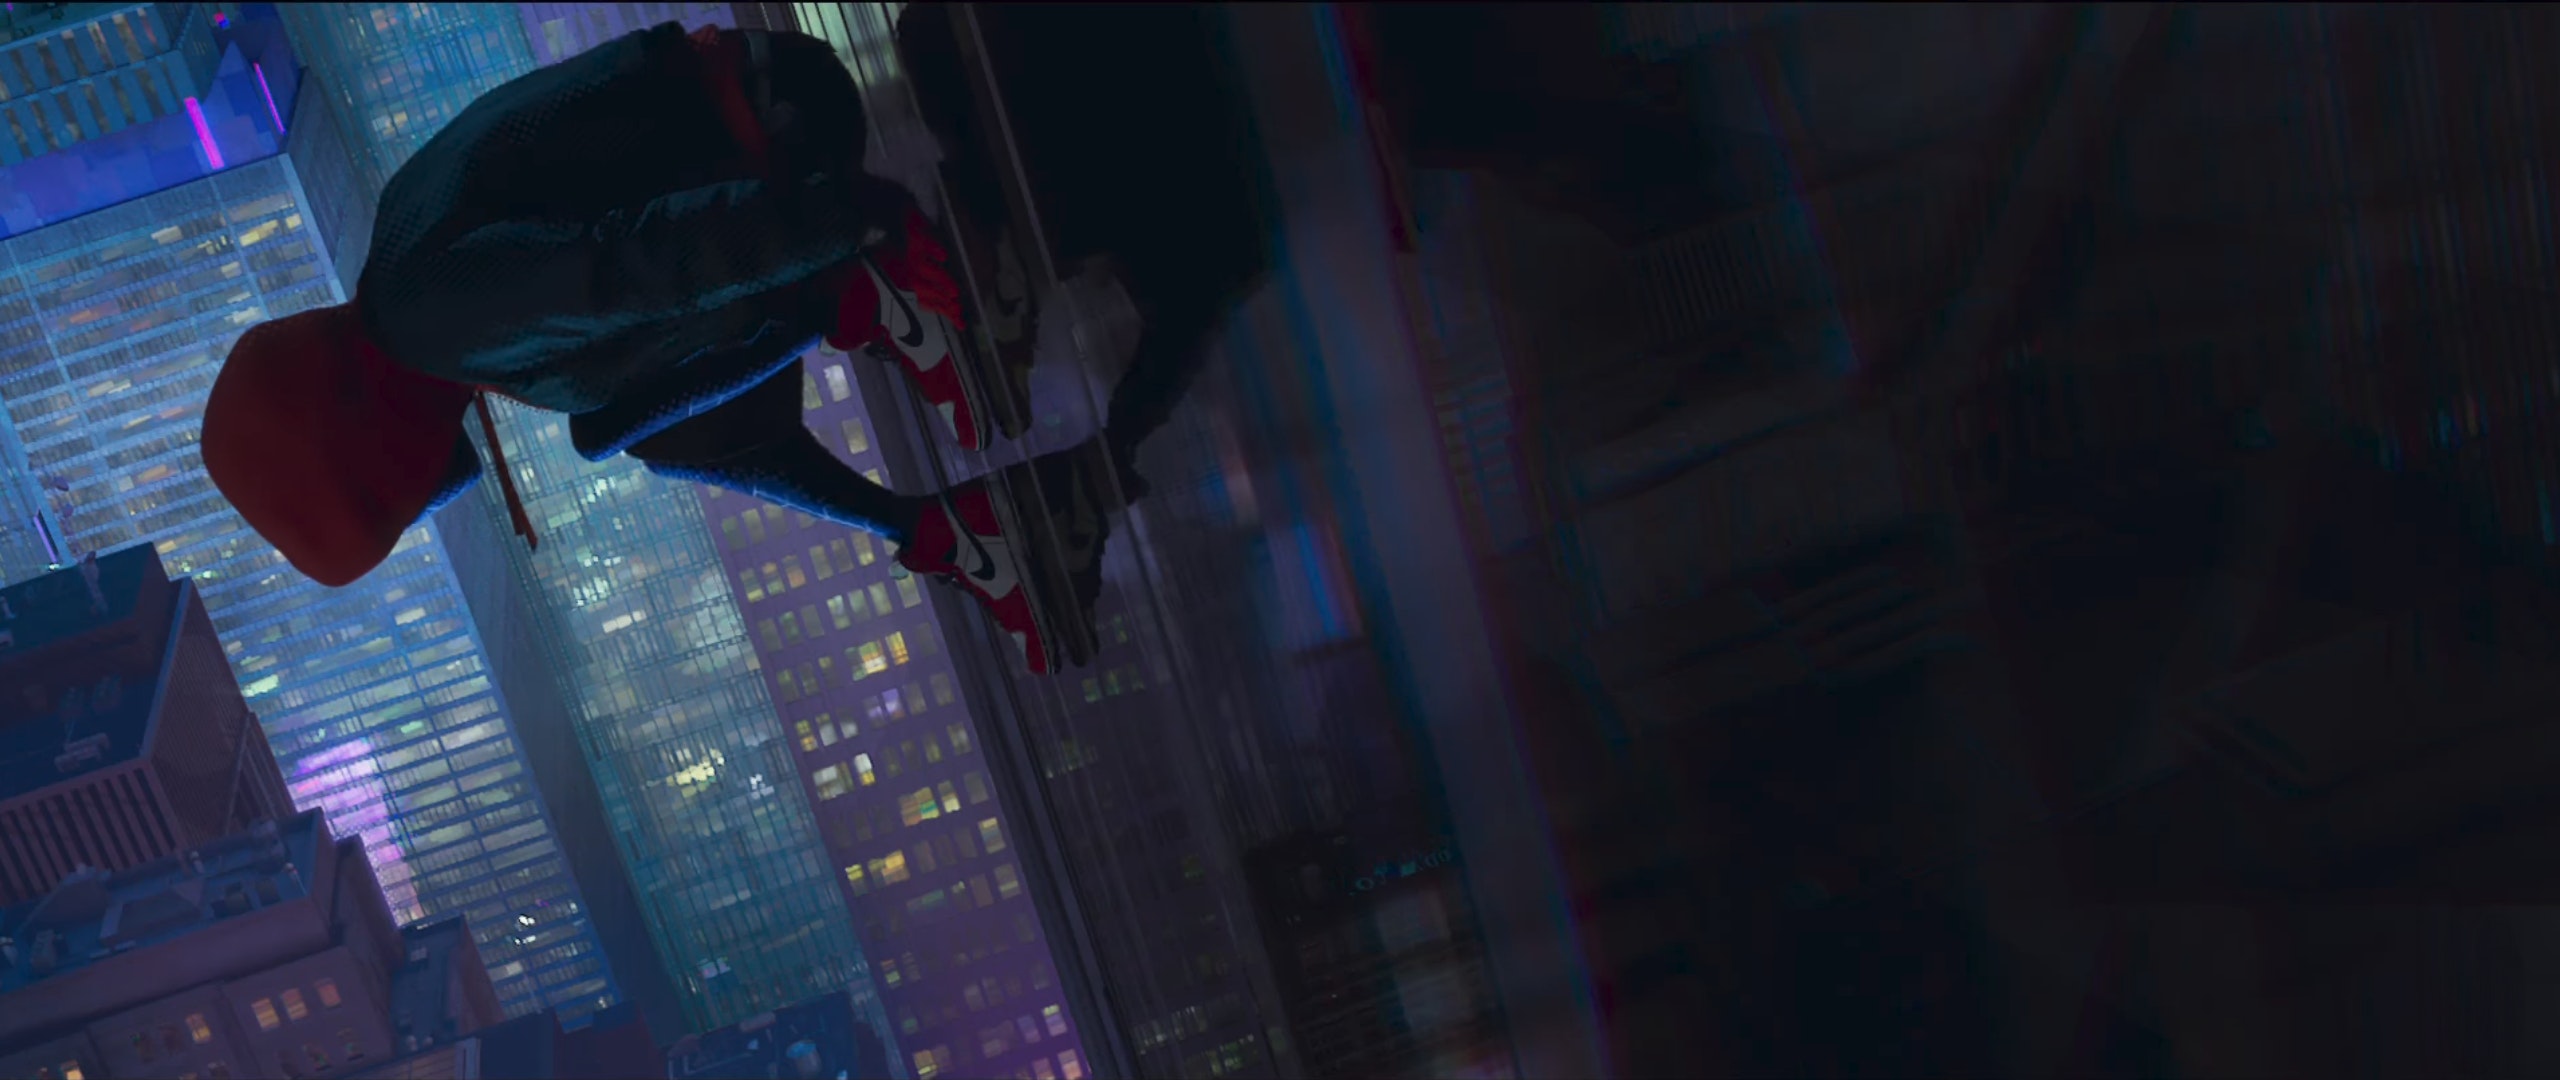 Hình nền Spiderman: Into the Spiderverse HD: Hình nền Spiderman: Into the Spiderverse HD là lựa chọn hoàn hảo cho những ai yêu thích bộ phim hoạt hình cực kỳ nổi tiếng này. Với hình ảnh đẹp mắt và phong cách độc đáo của Spiderman, các fan không thể bỏ qua bộ sưu tập này. Tải về ngay để trang trí cho màn hình điện thoại hay máy tính của bạn.